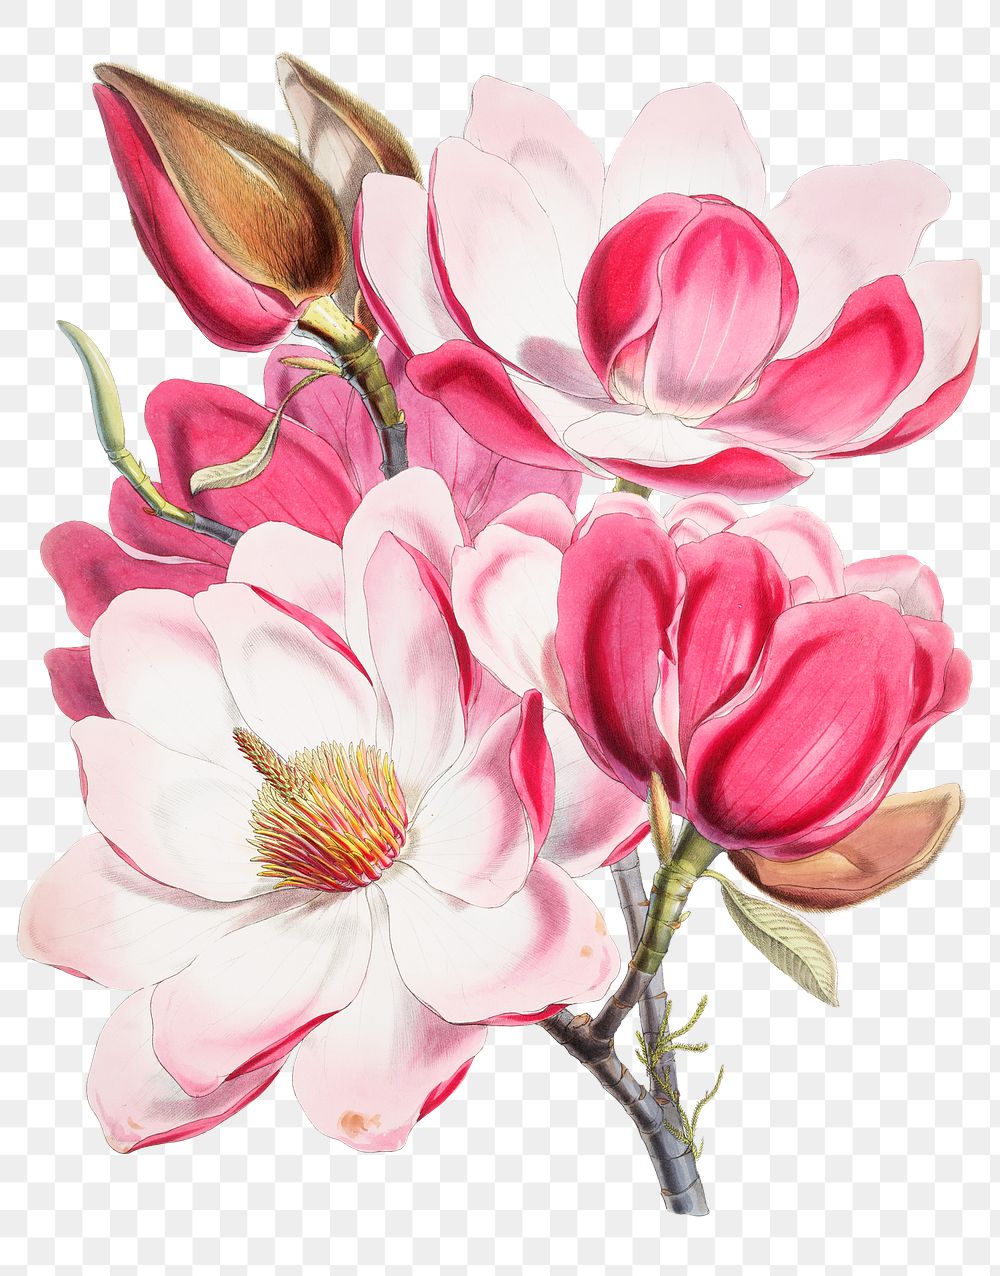 Png Magnolia Campbellii sticker, floral vintage illustration, transparent background